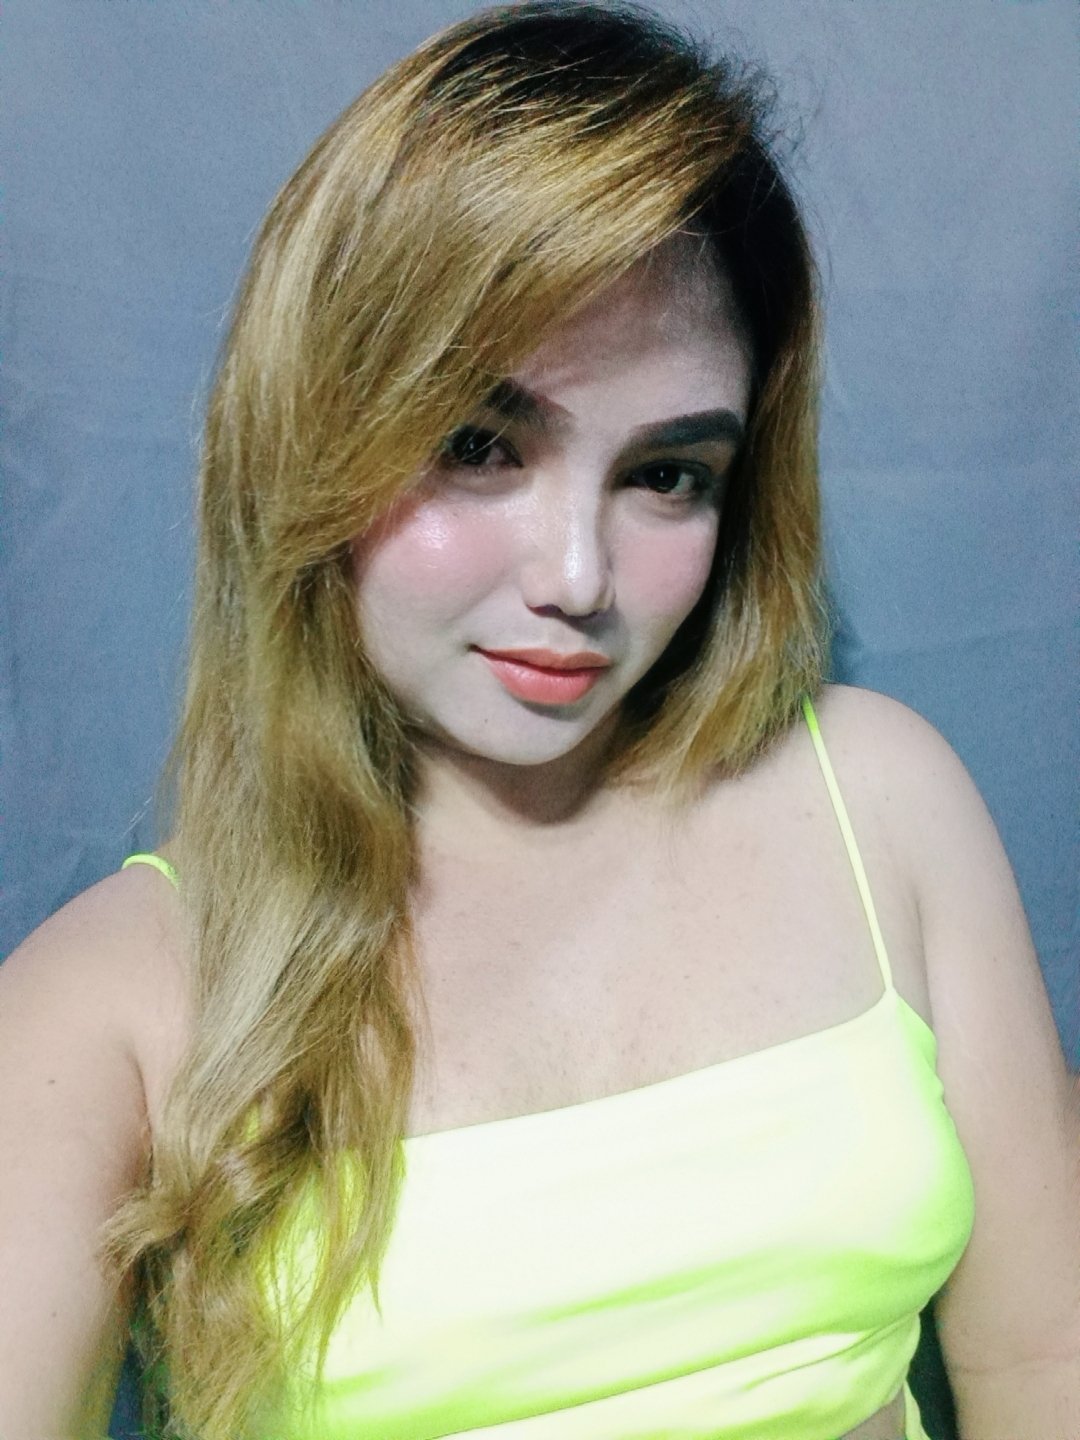 Talia Sex on Cam, Filipino Transsexual escort in Manila picture photo